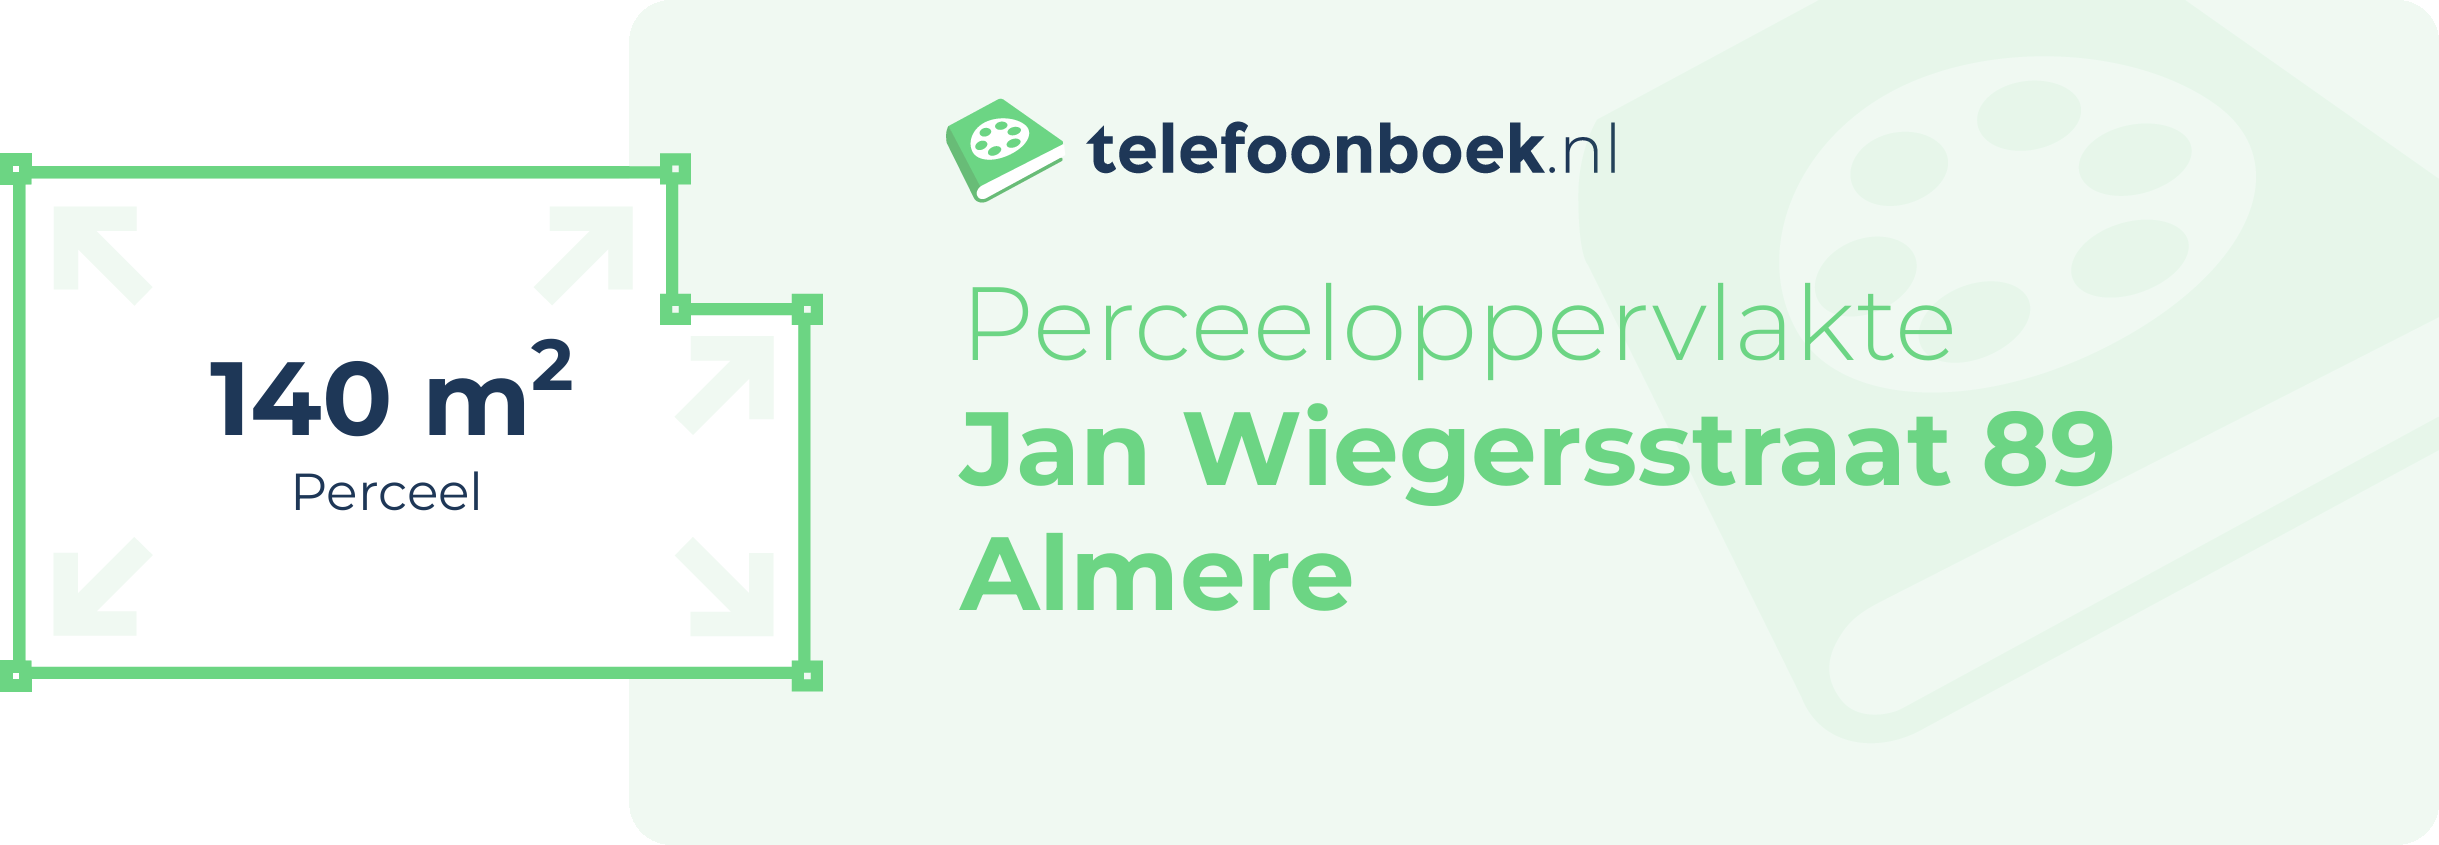 Perceeloppervlakte Jan Wiegersstraat 89 Almere